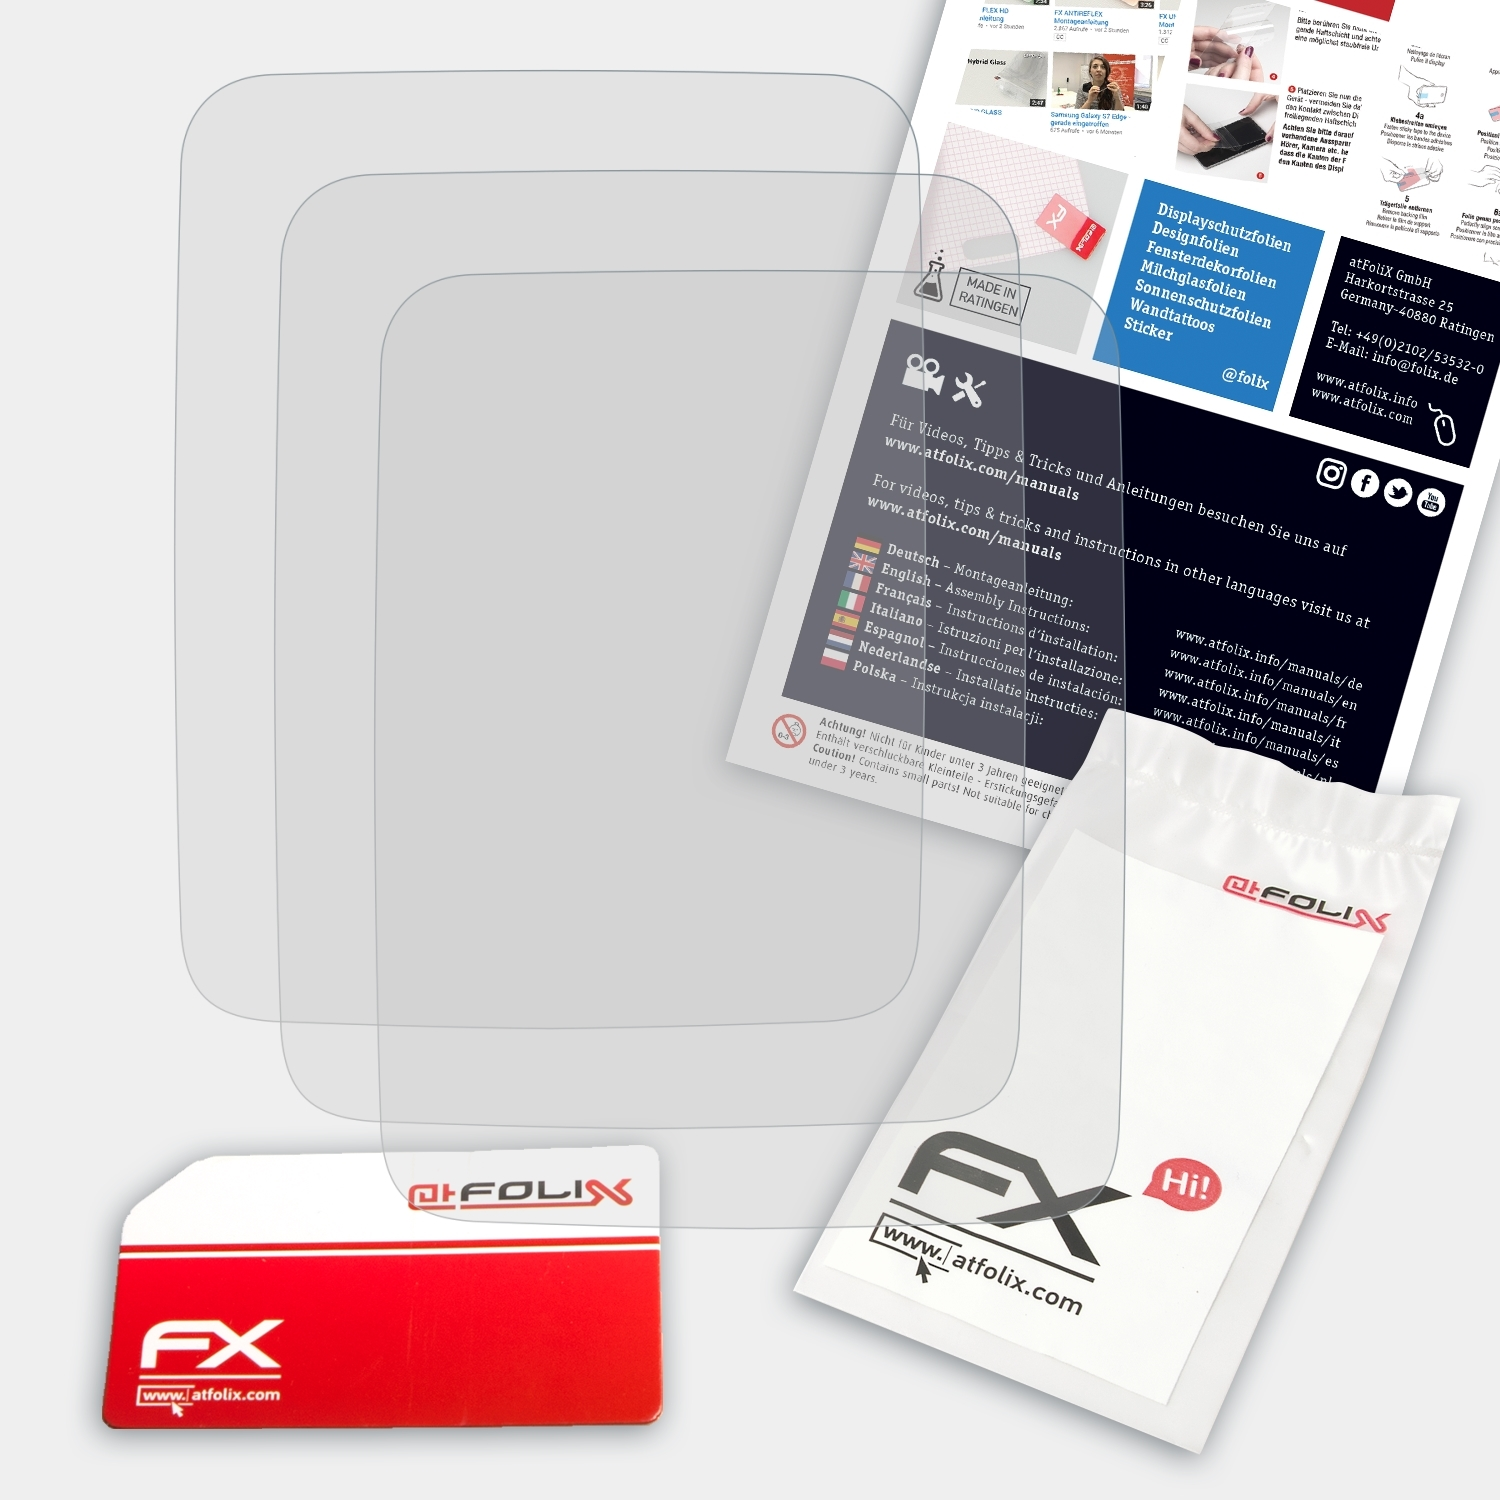 TomTom Spark) 3x FX-Antireflex ATFOLIX Displayschutz(für